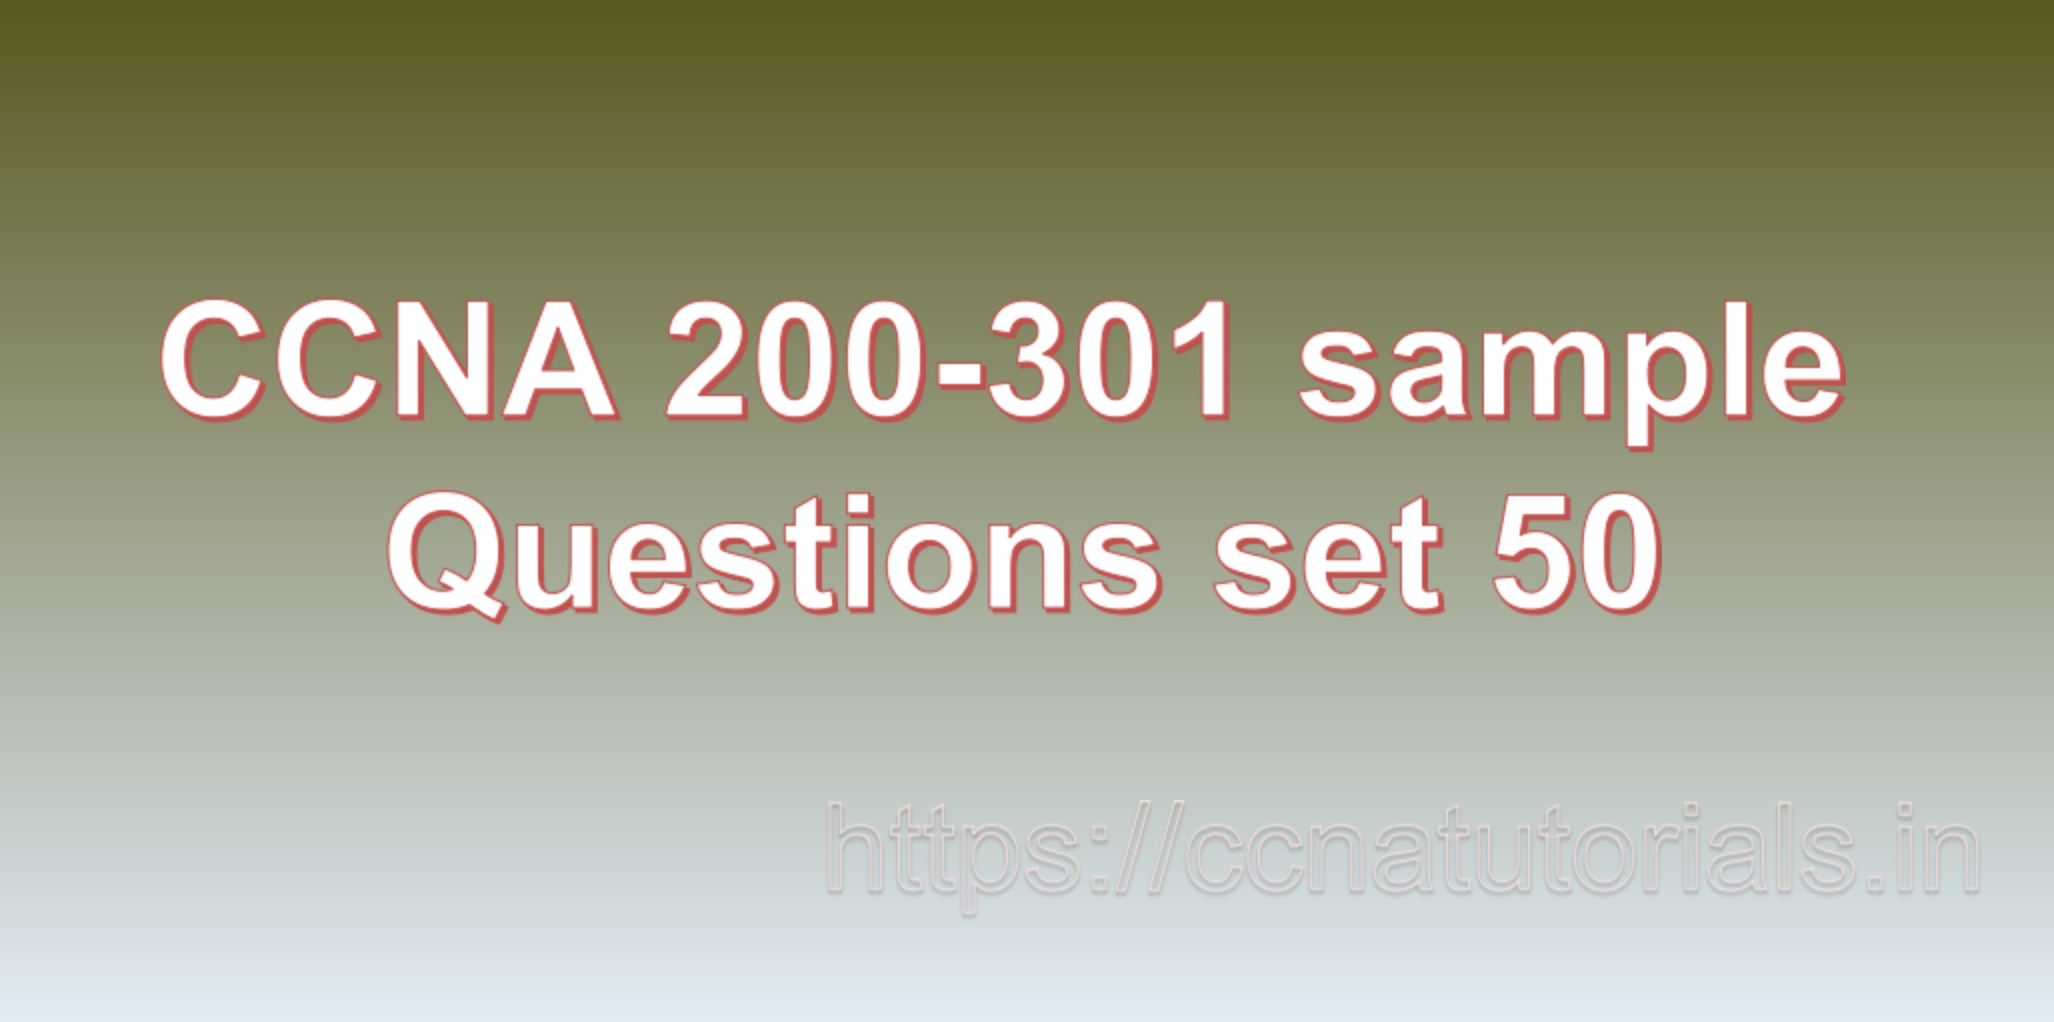 ccna sample questions set 50, ccna tutorials, CCNA Exam, ccna